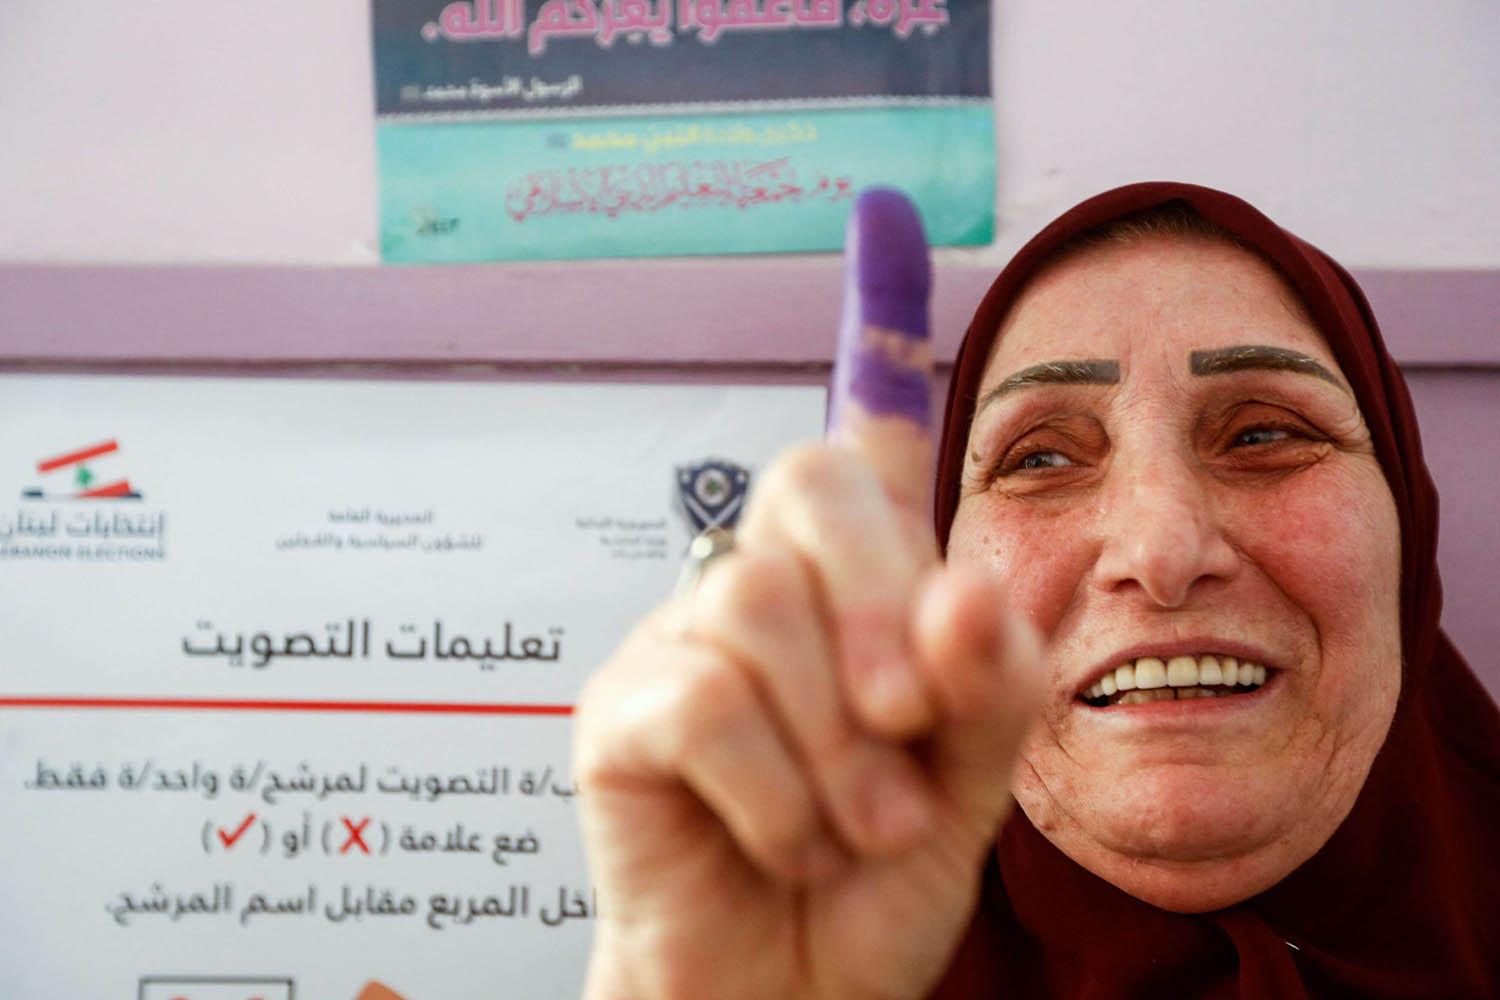 لبنانية تعرض الحبر على اصبعها بعد التصويت في الانتخابات